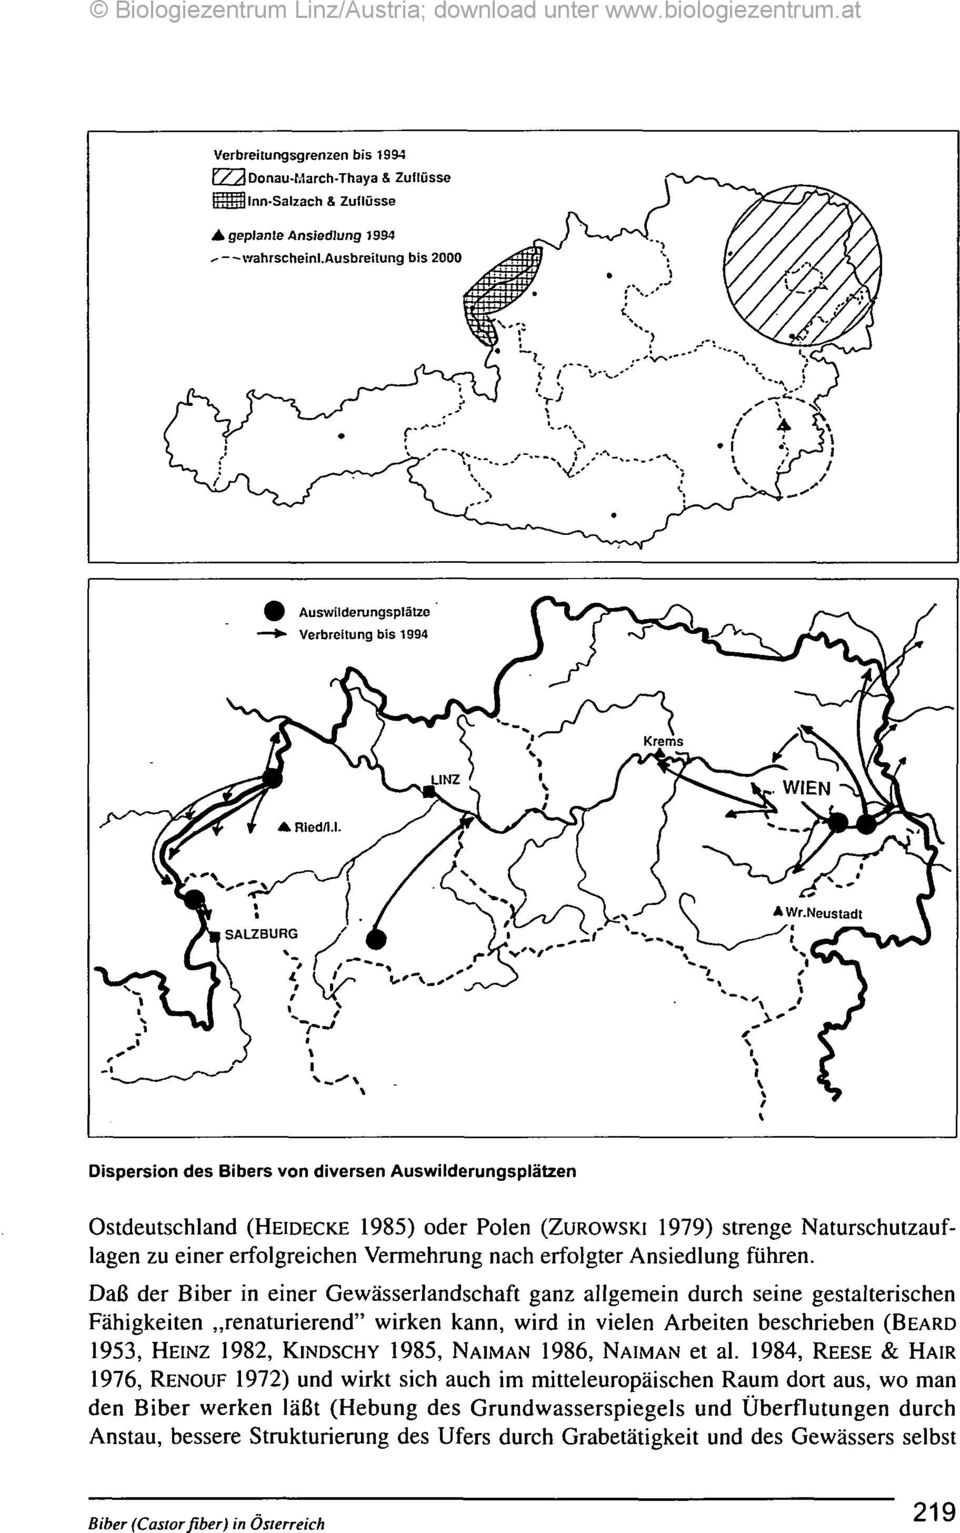 Dispersion des Bibers von diversen Auswilderungsplätzen Ostdeutschland (HEIDECKE 1985) oder Polen (ZUROWSKI 1979) strenge Naturschutzauflagen zu einer erfolgreichen Vermehrung nach erfolgter